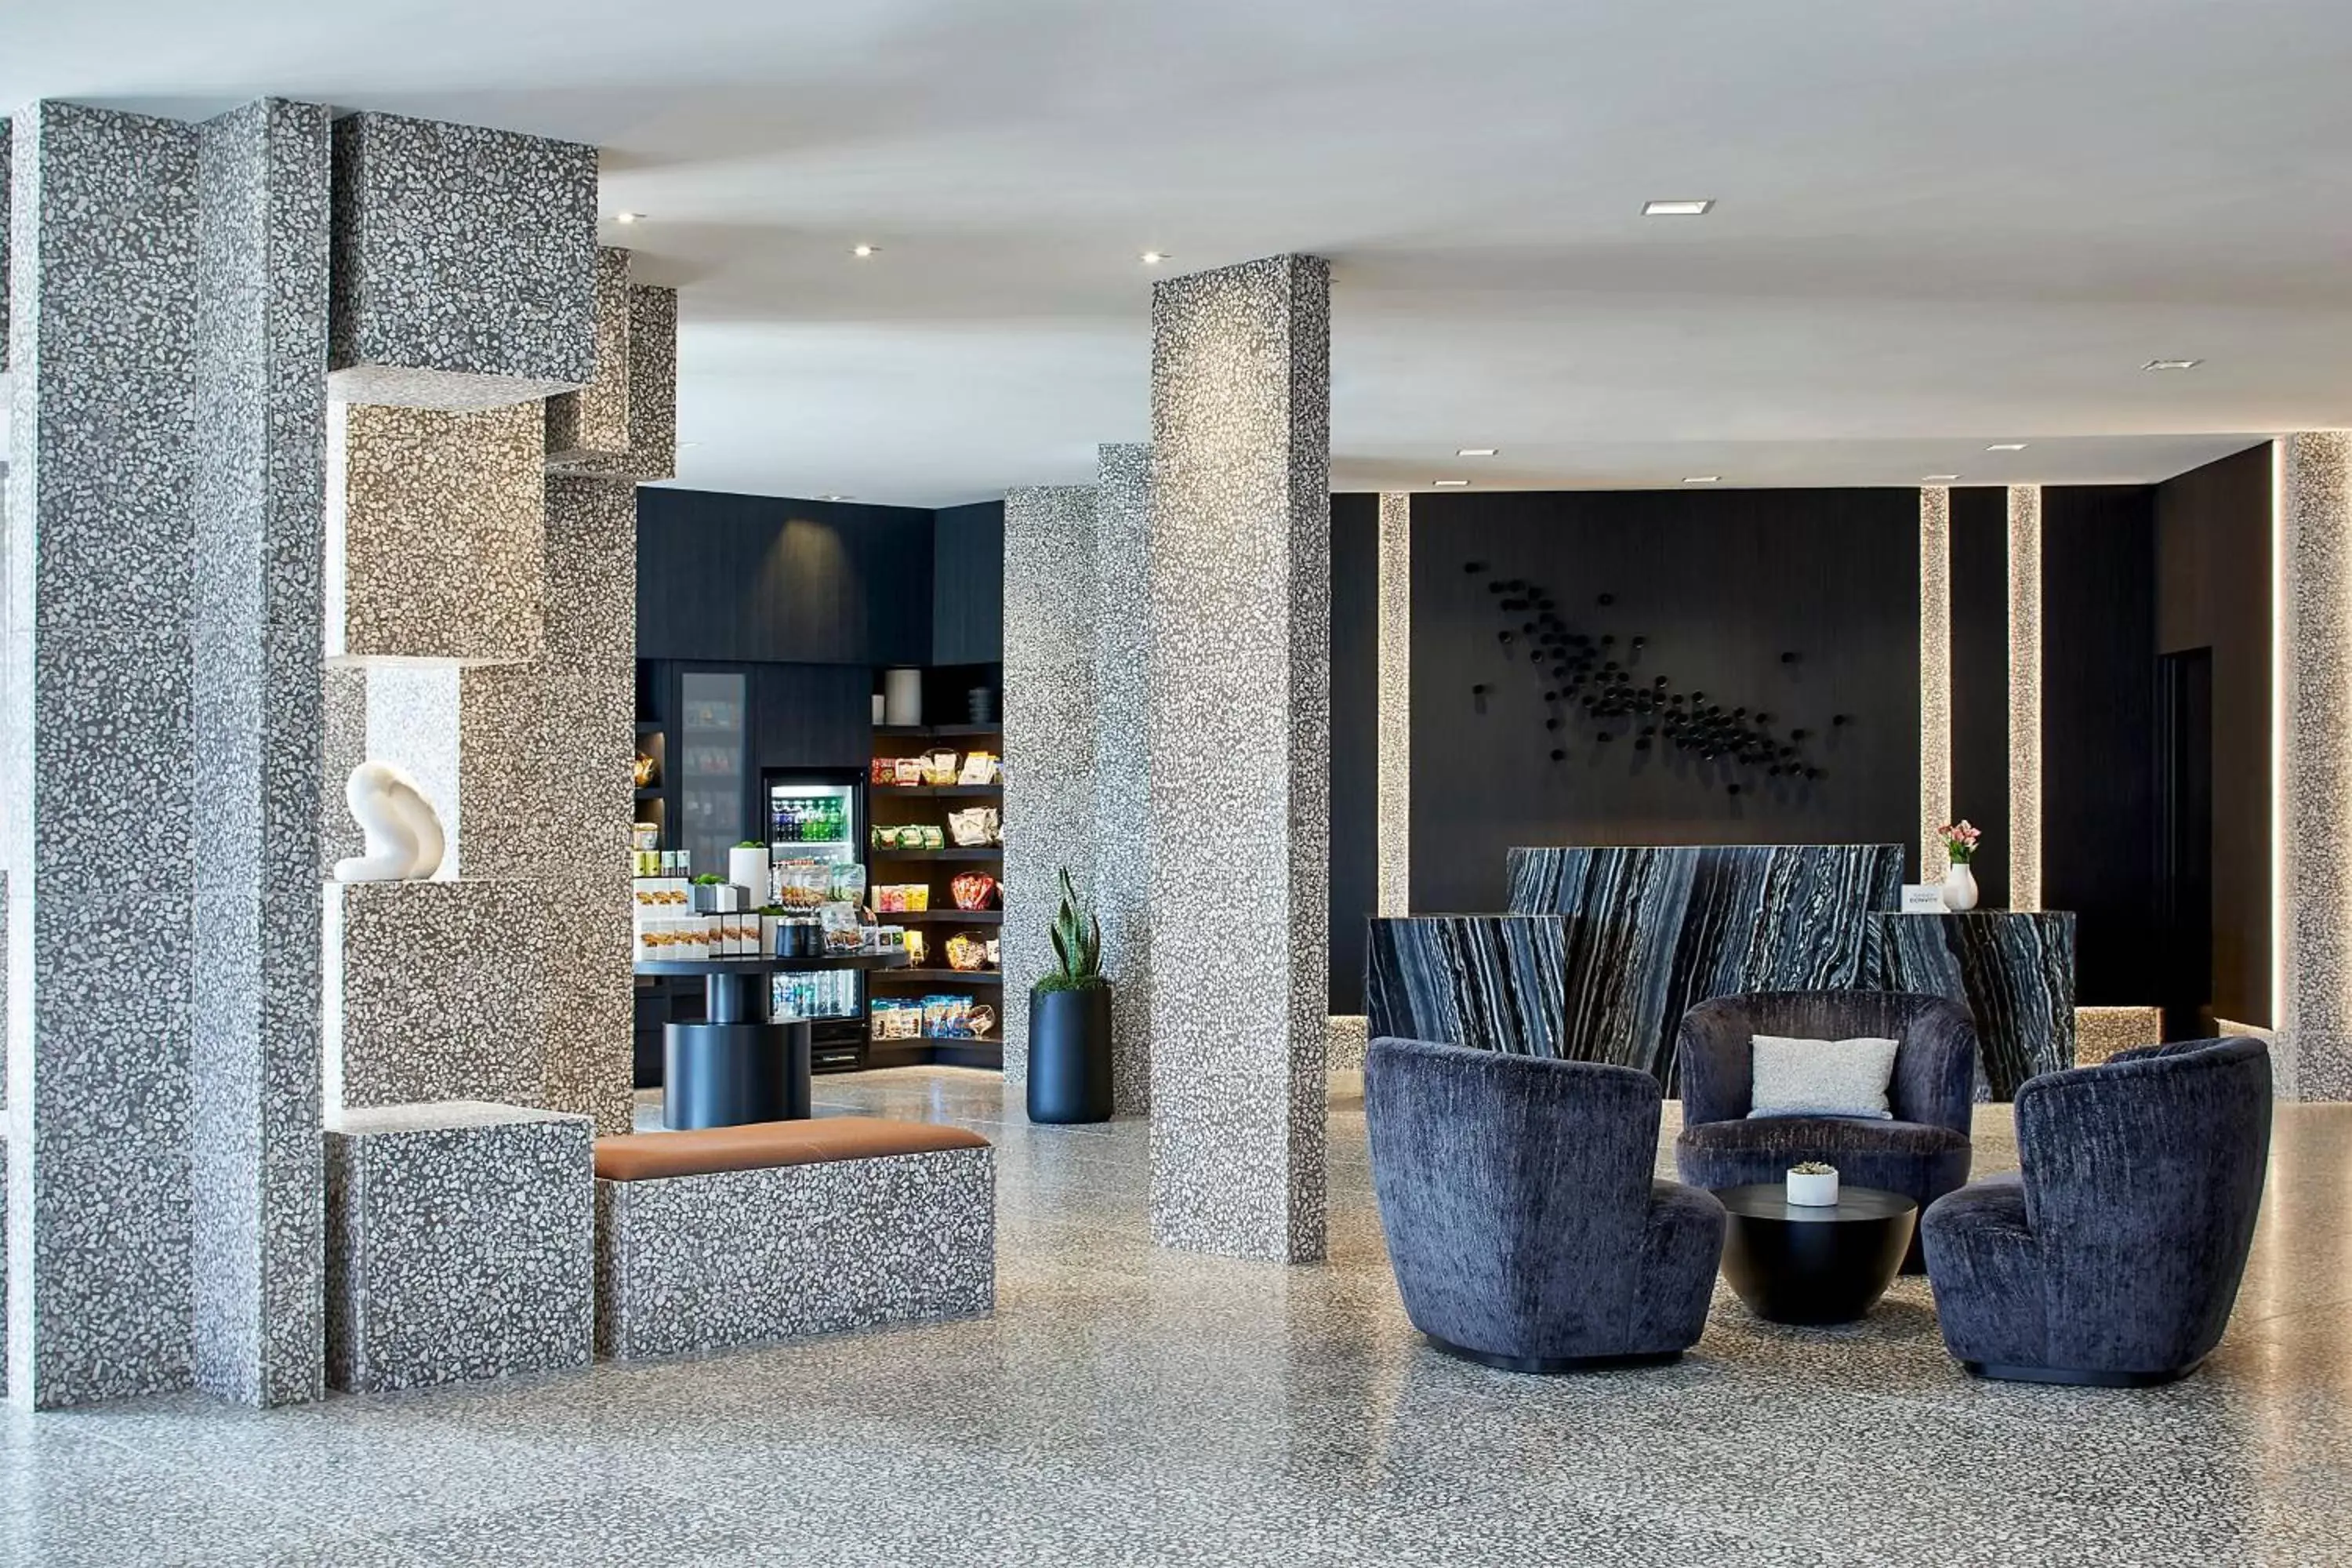 Lobby or reception in AC Hotel Miami Wynwood